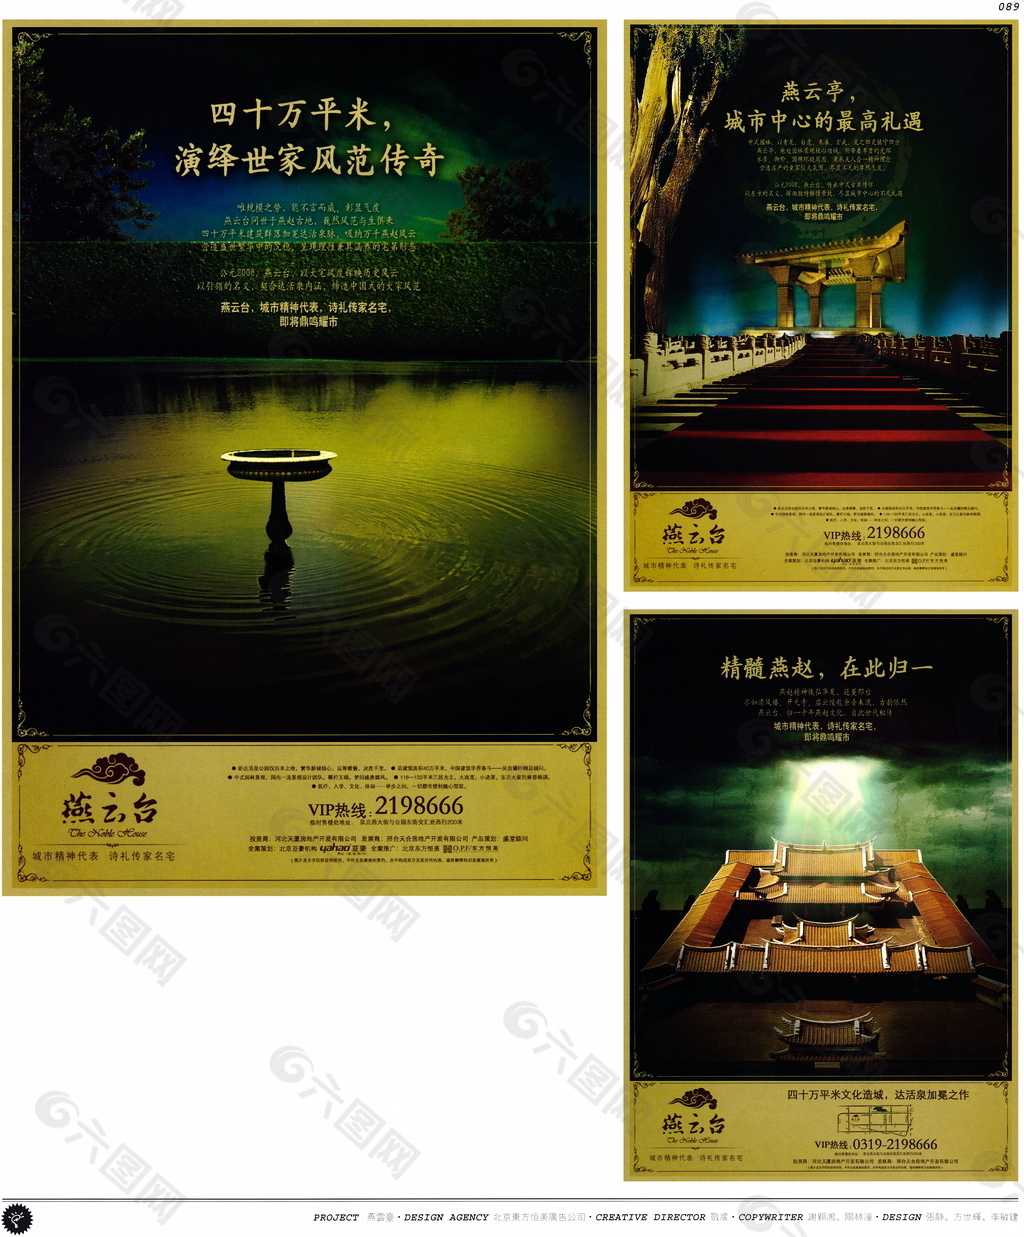 中国房地产广告年鉴 第一册 创意设计_0086